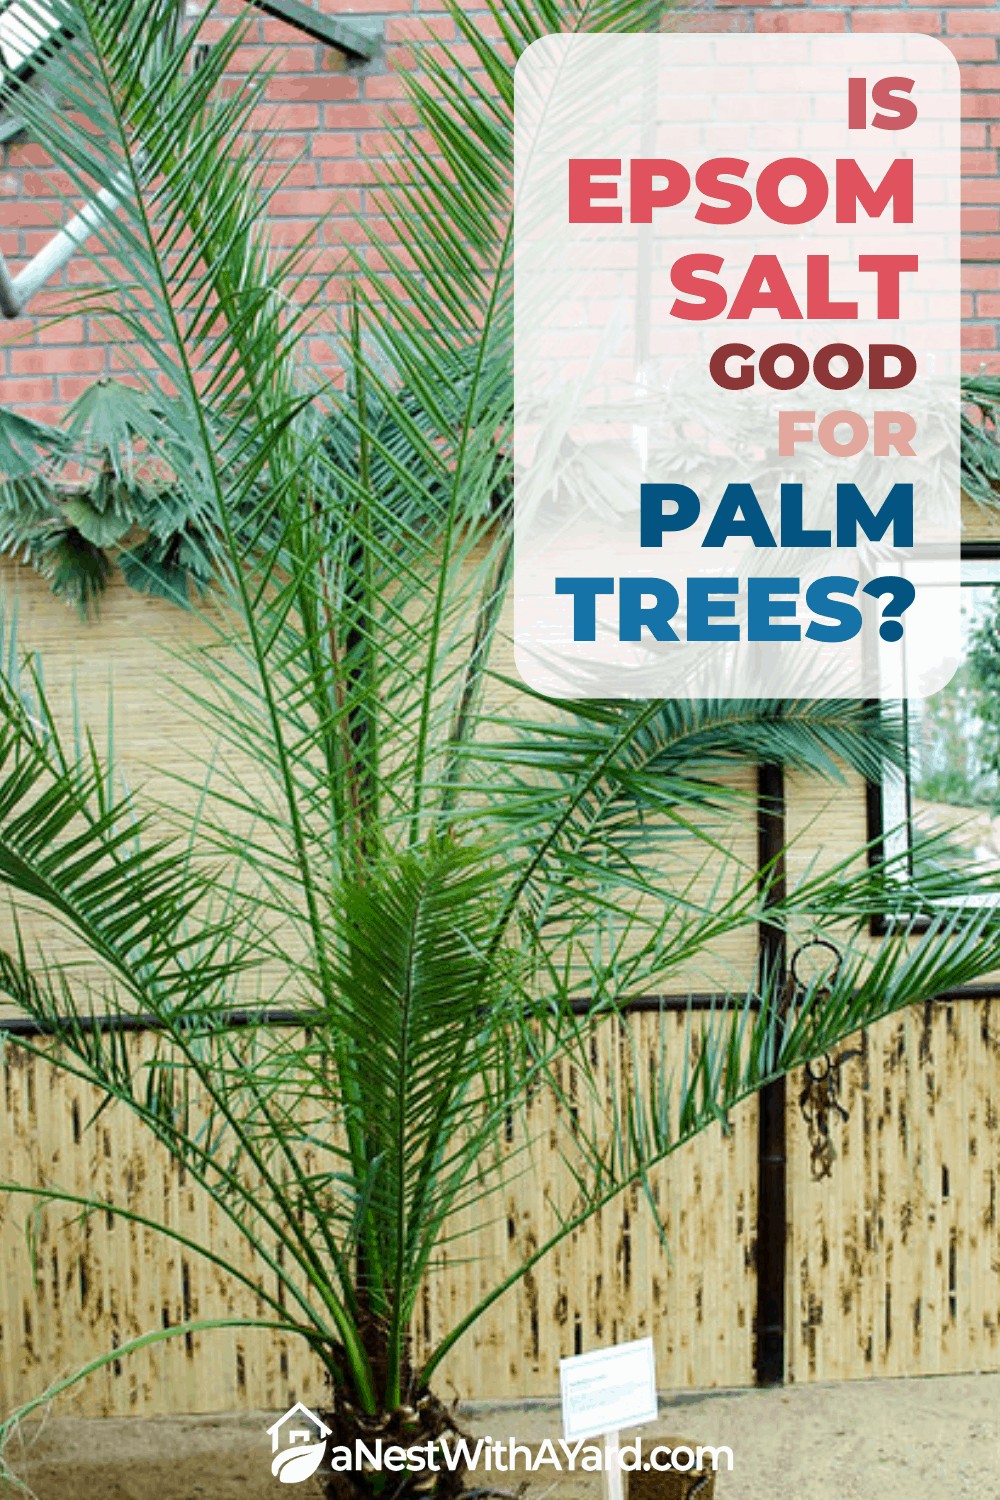 Is Epsom salt good for palm trees?